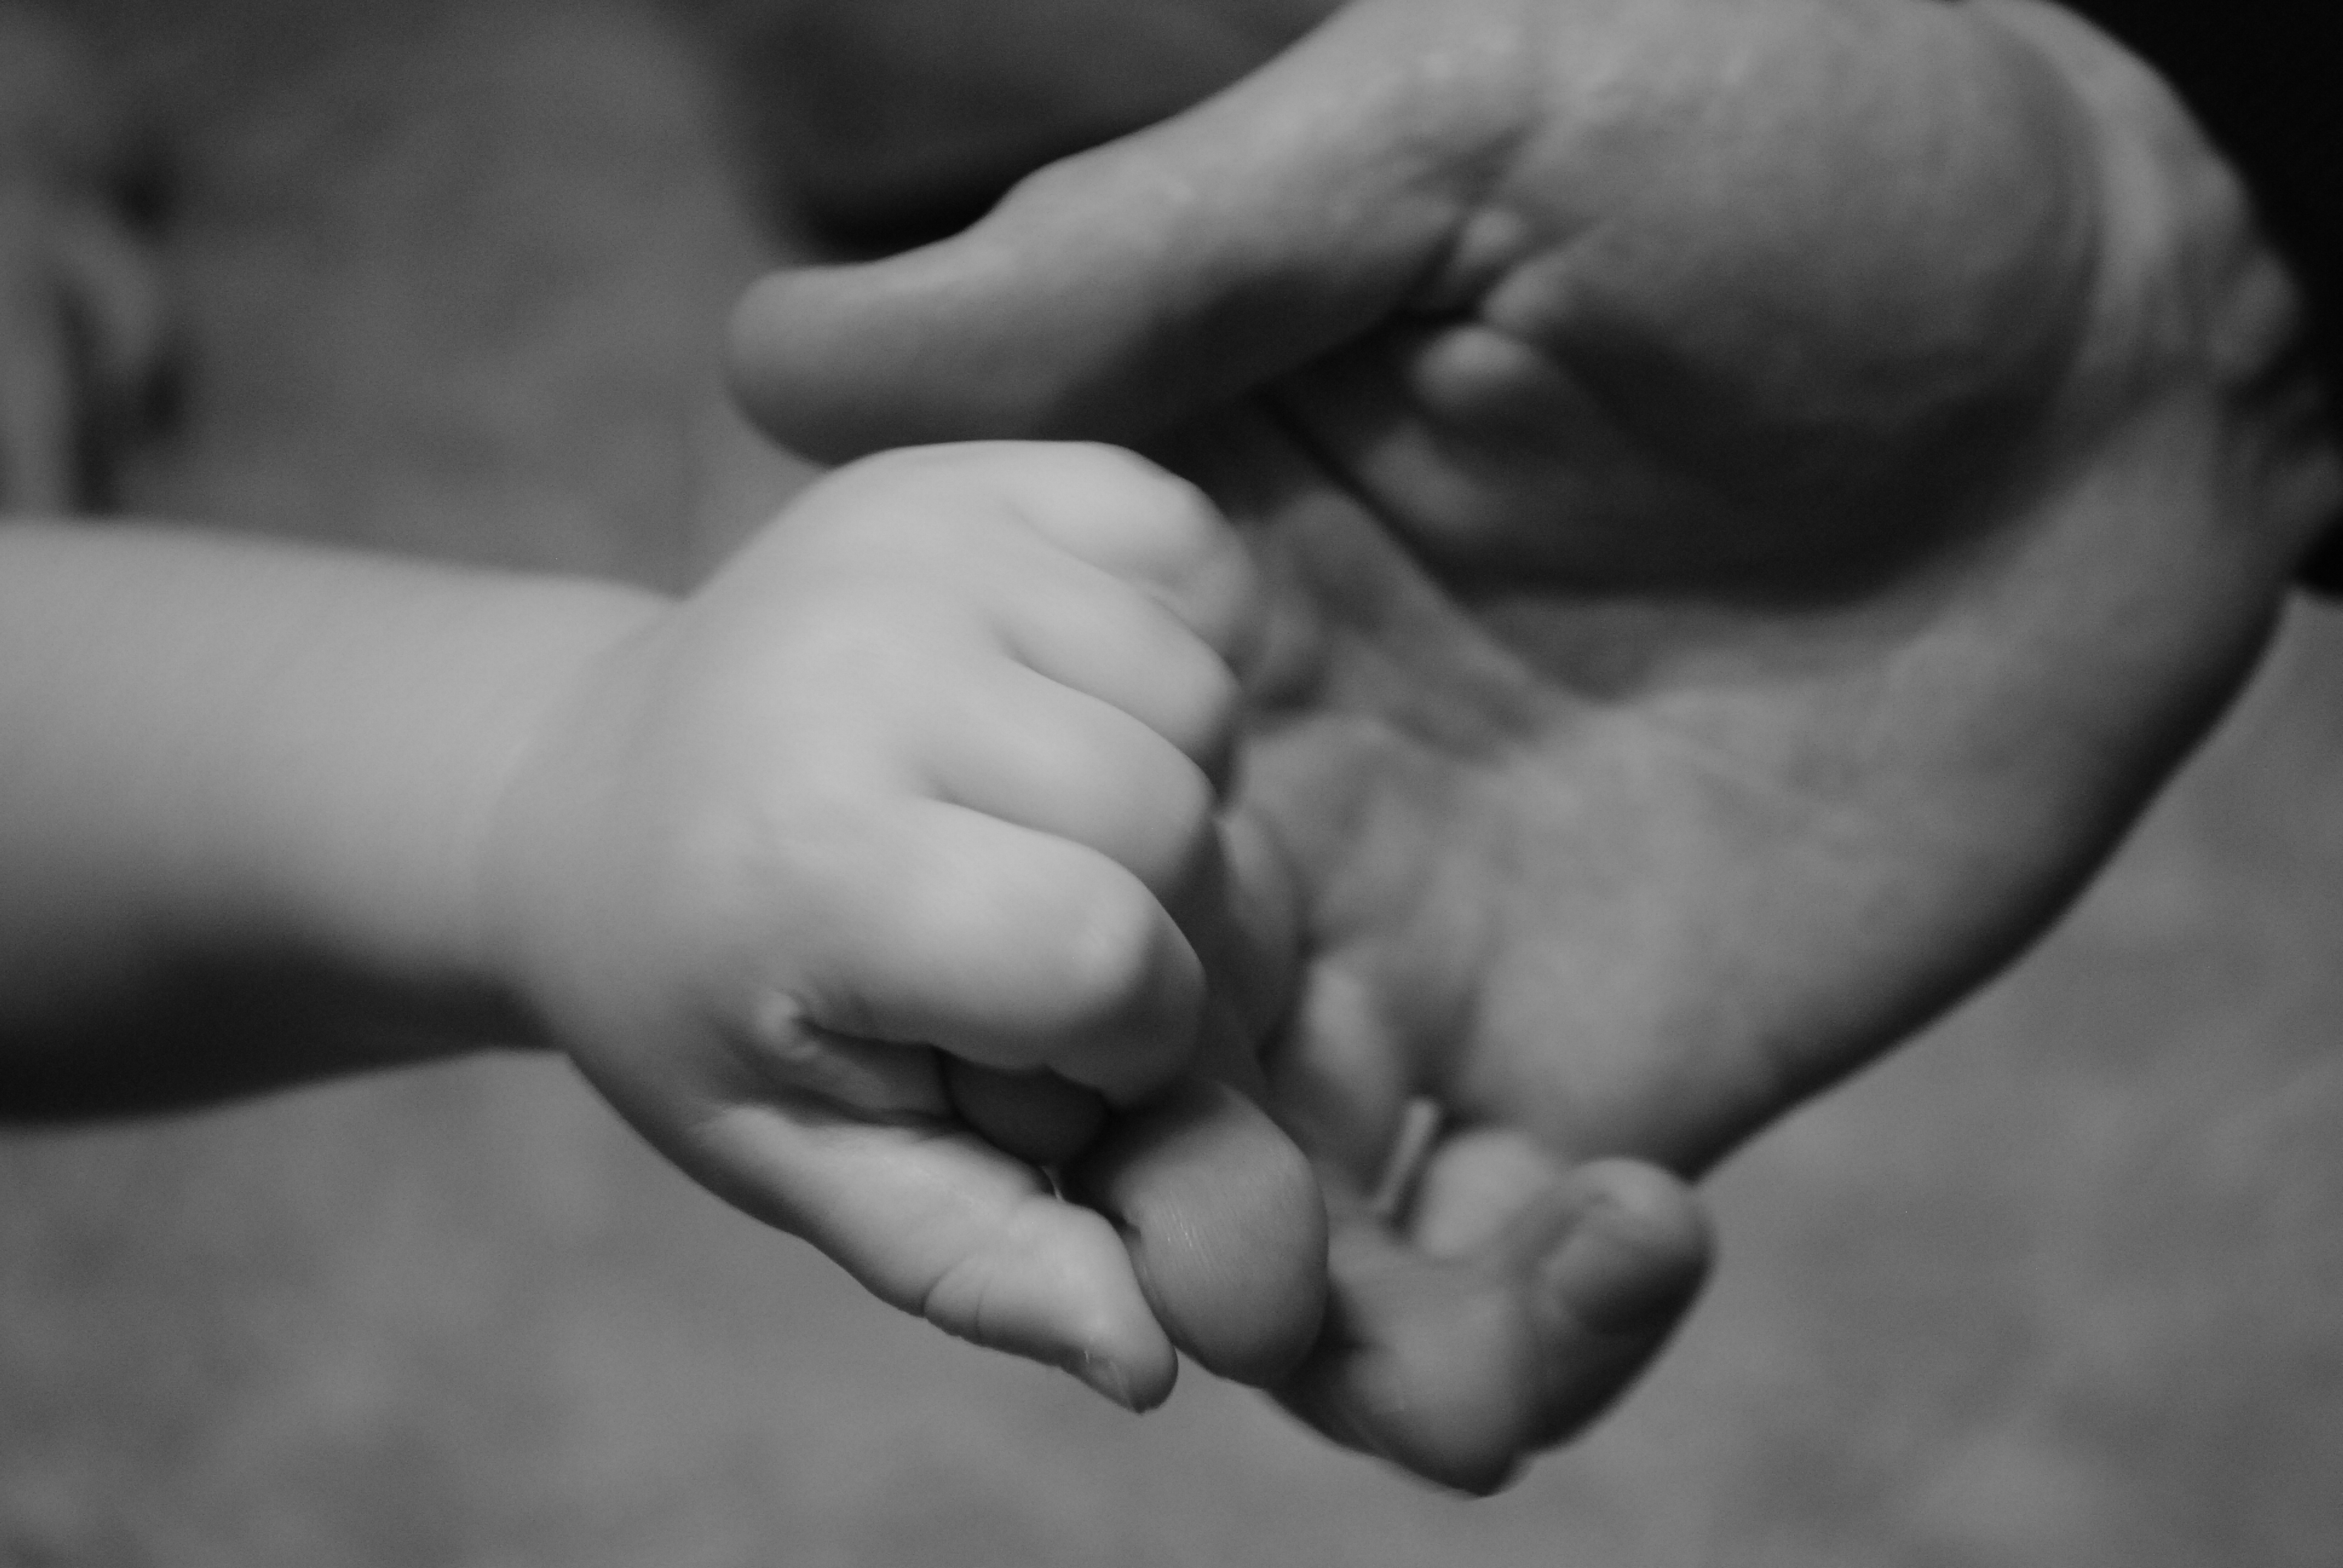 Папа держит дочку. Мужская и детская рука. Рука ребенка в руке папы. Мужская рука с рукой ребенка. Папа с сыном на руках.